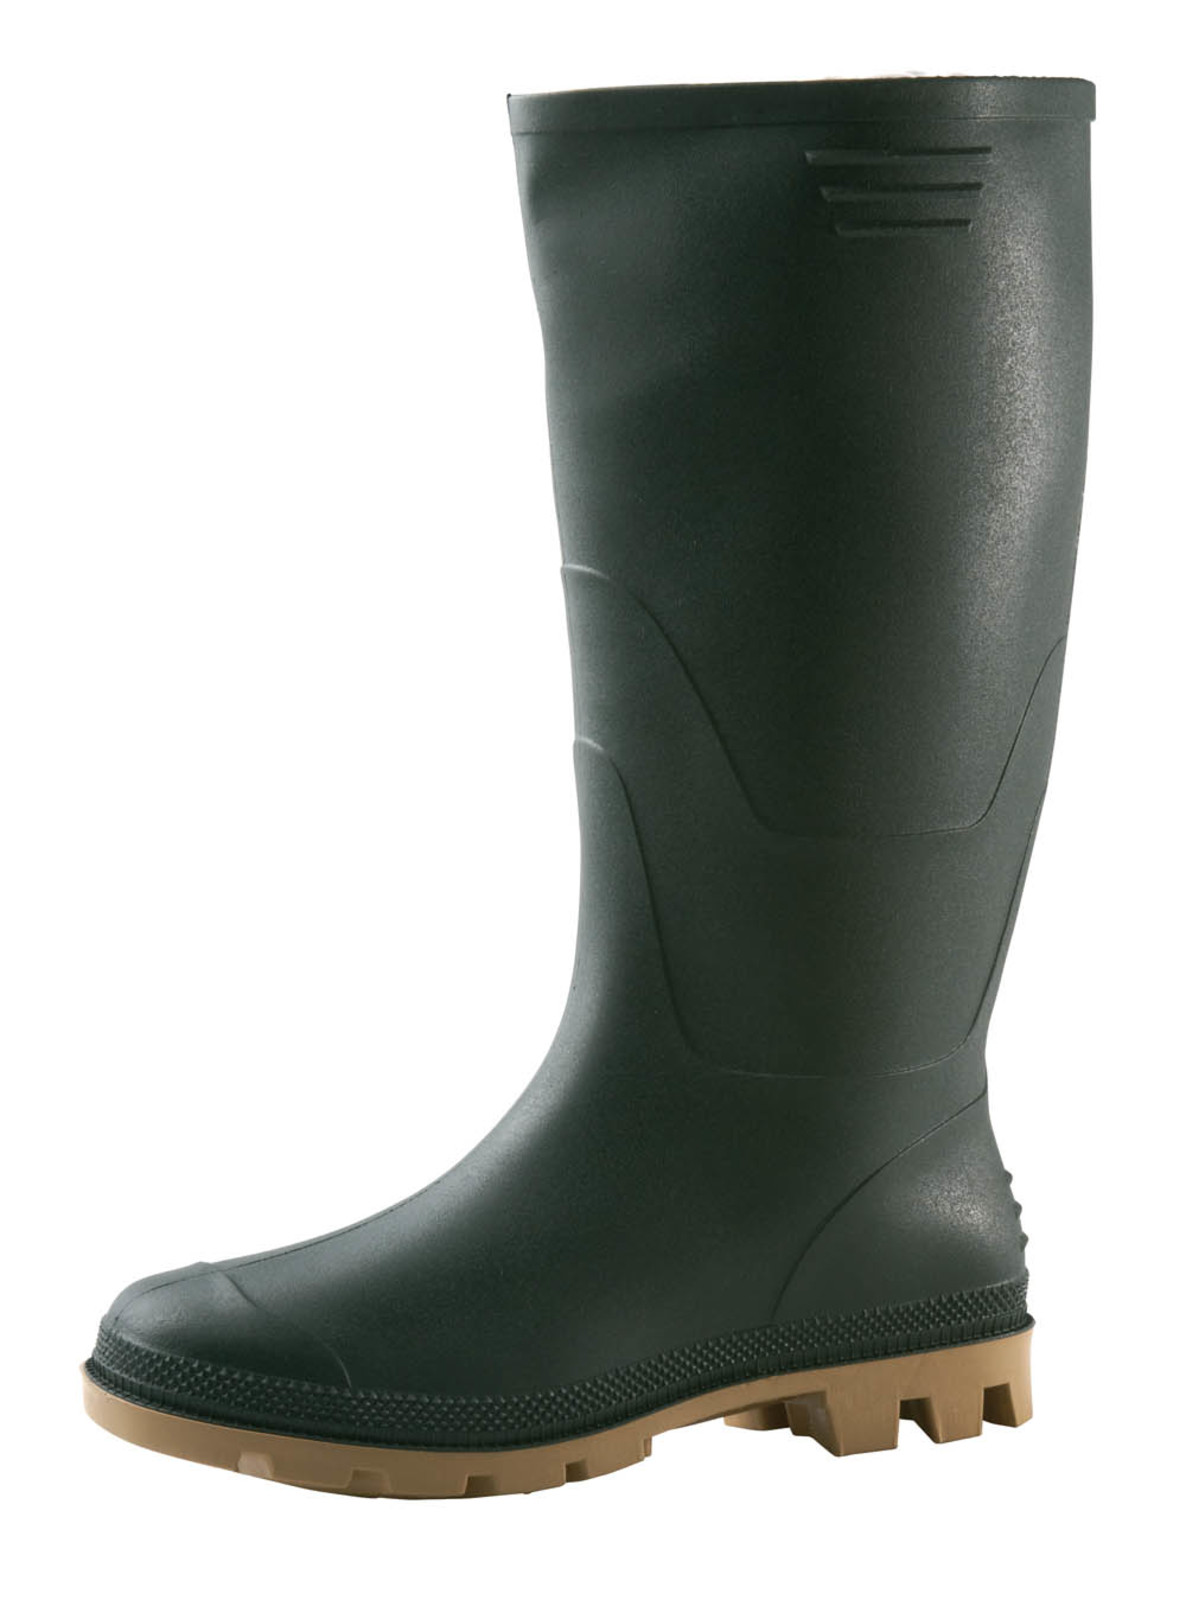 Gumáky Boots Ginocchio PVC - veľkosť: 38, farba: zelená